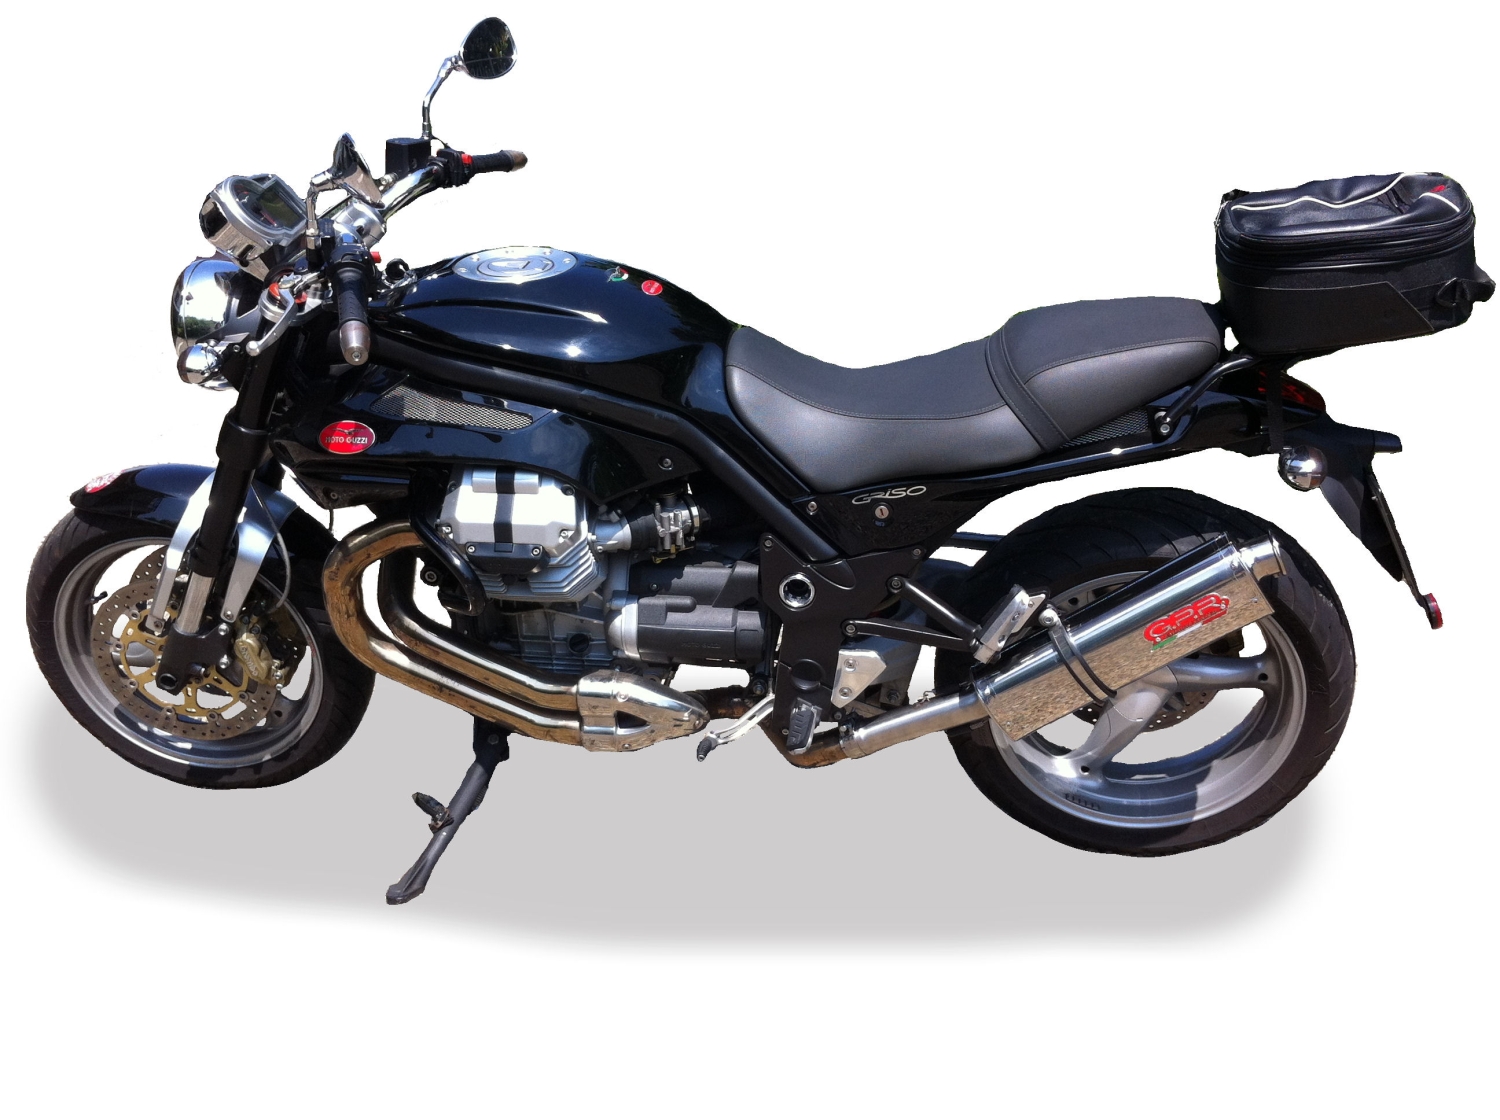 Scarico compatibile con Moto Guzzi Griso 1200 8V 2007-2016, Trioval, Terminale di scarico omologato, fornito con db killer estraibile, catalizzatore e raccordo specifico